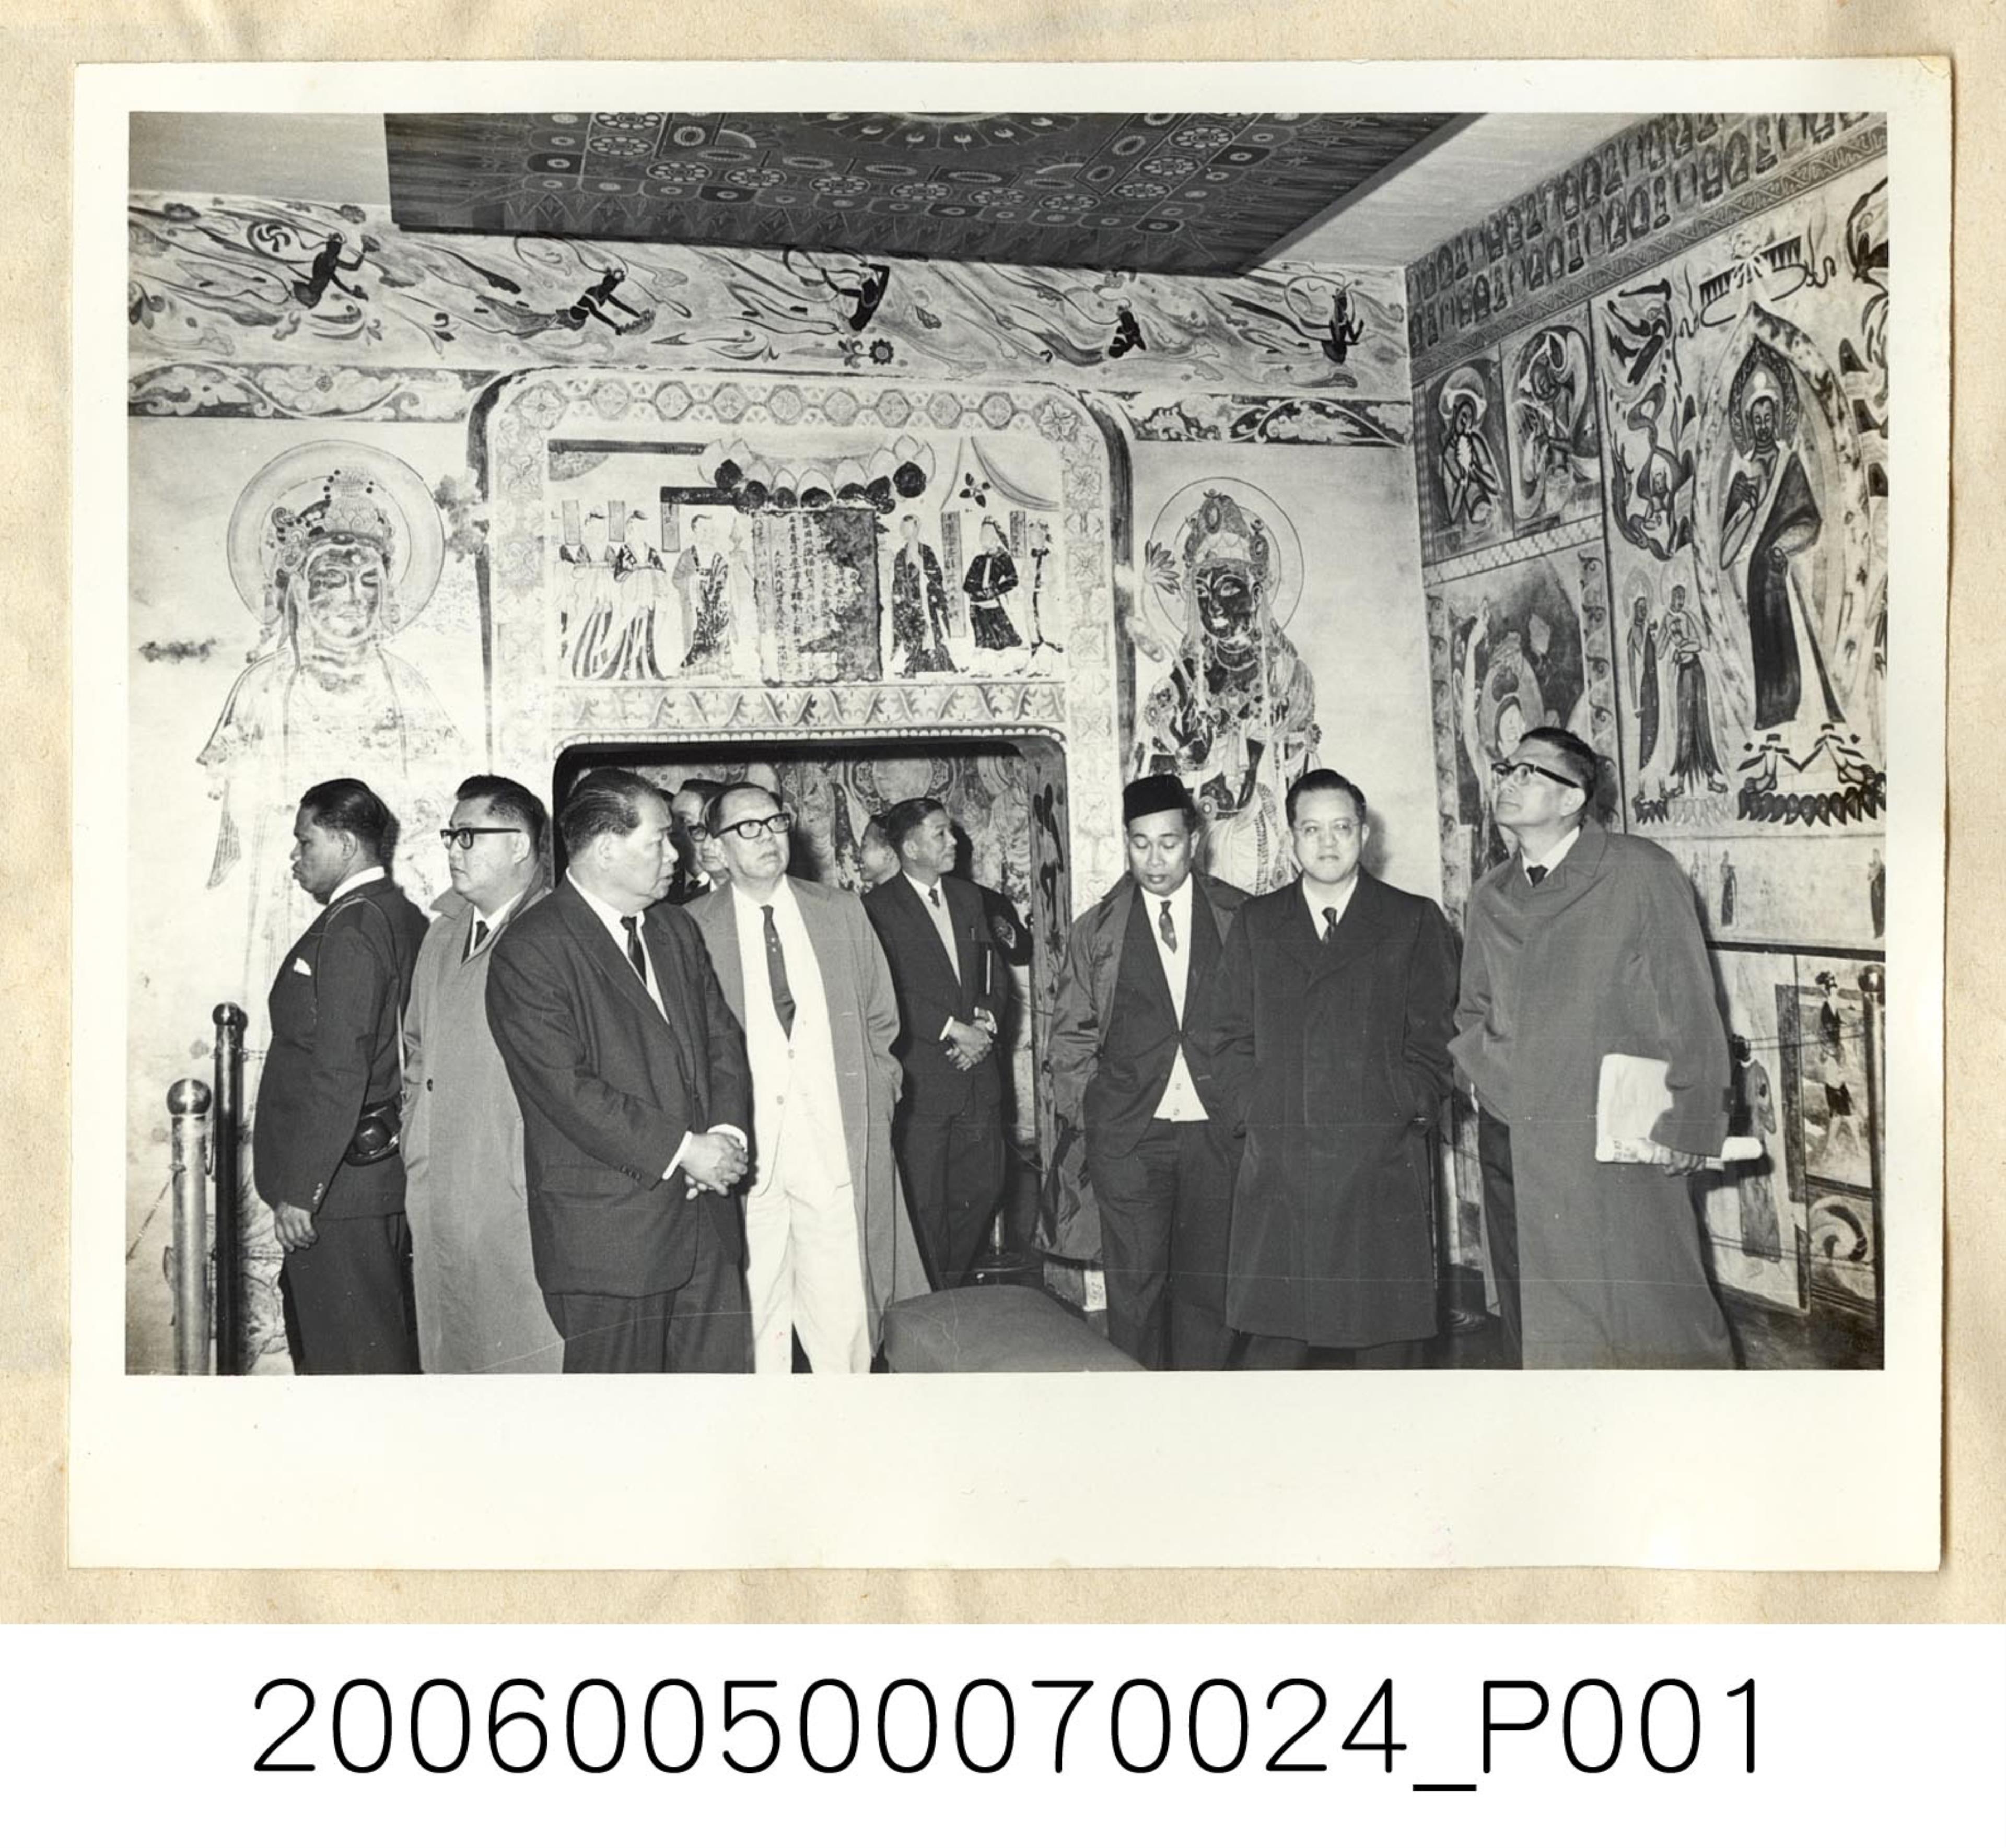 王氏攝影社攝〈參觀我國歷史博物館敦煌壁畫〉照片 (共1張)